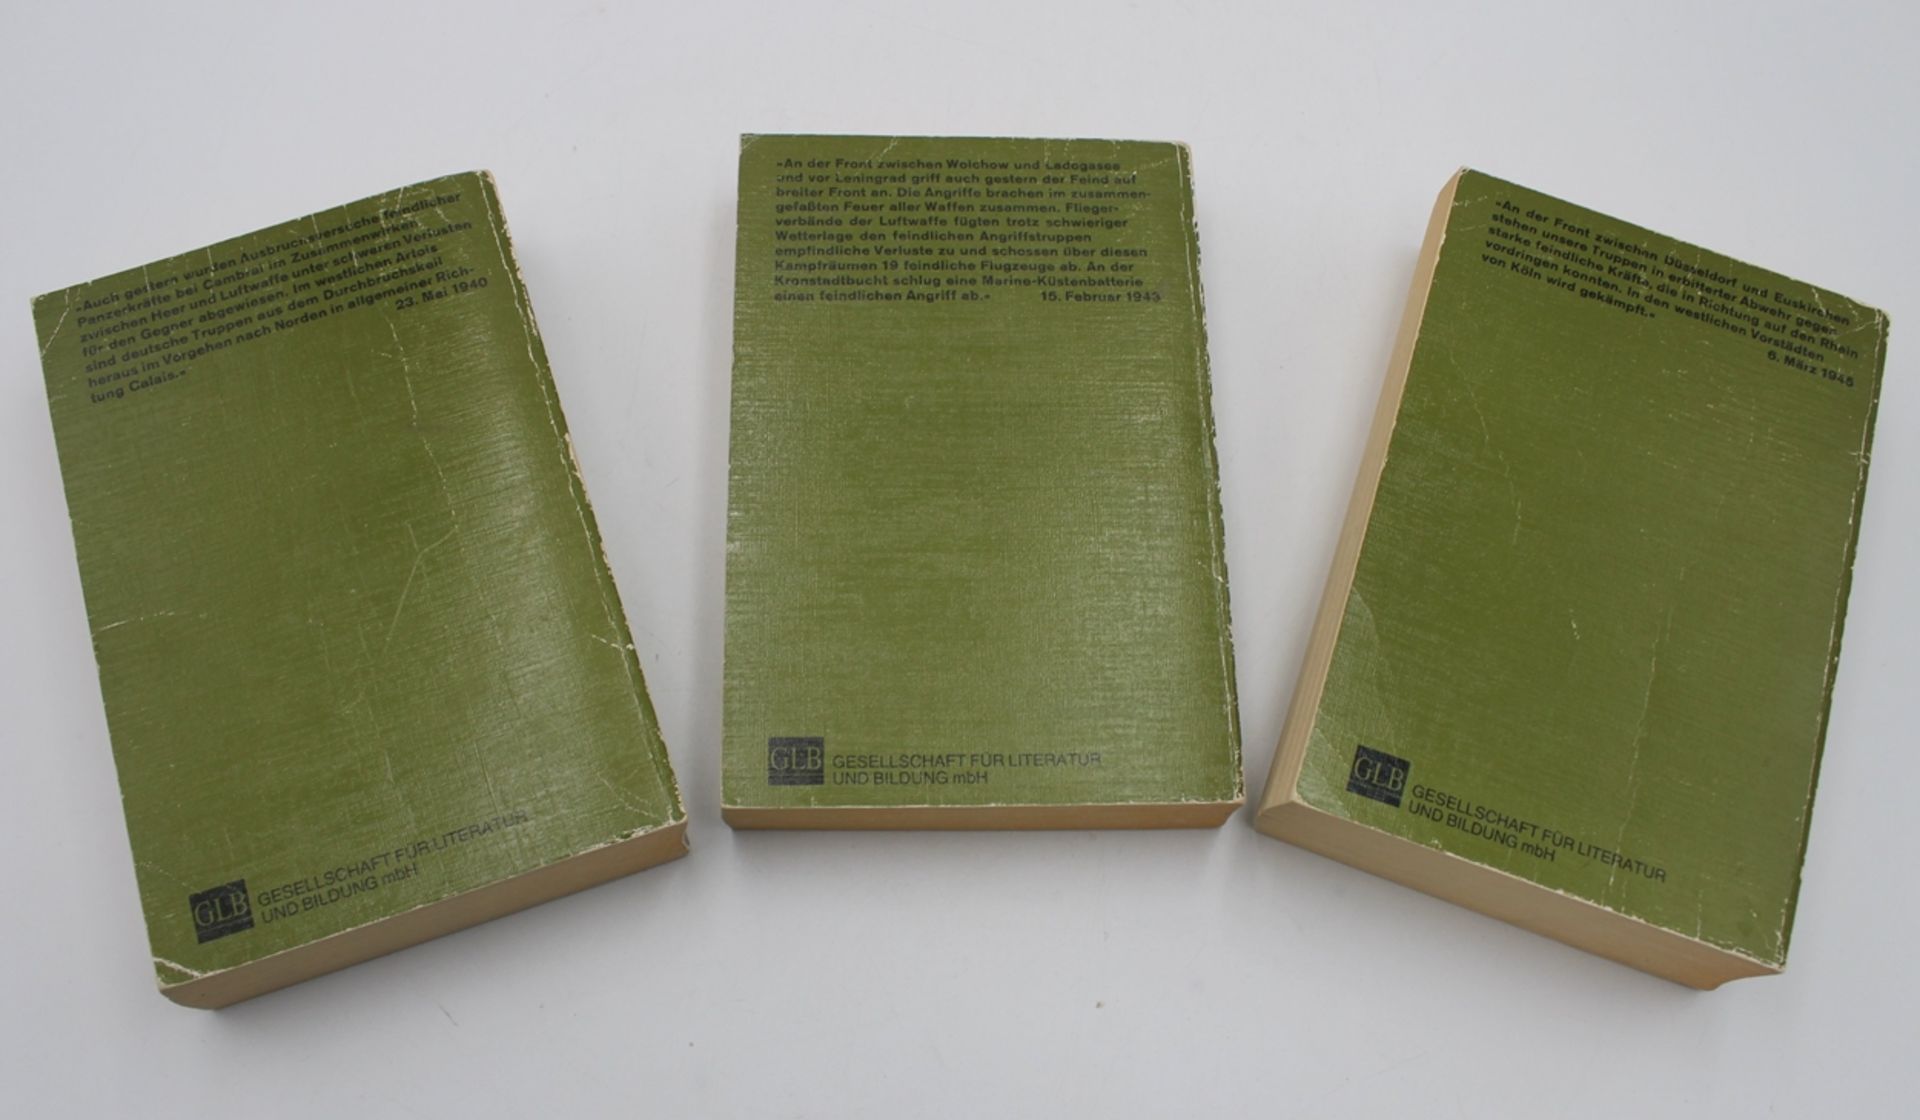 3 Bände, Die Wehrmachtberichte 1939-1945, 1989, Gebrauchsspuren - Image 2 of 4